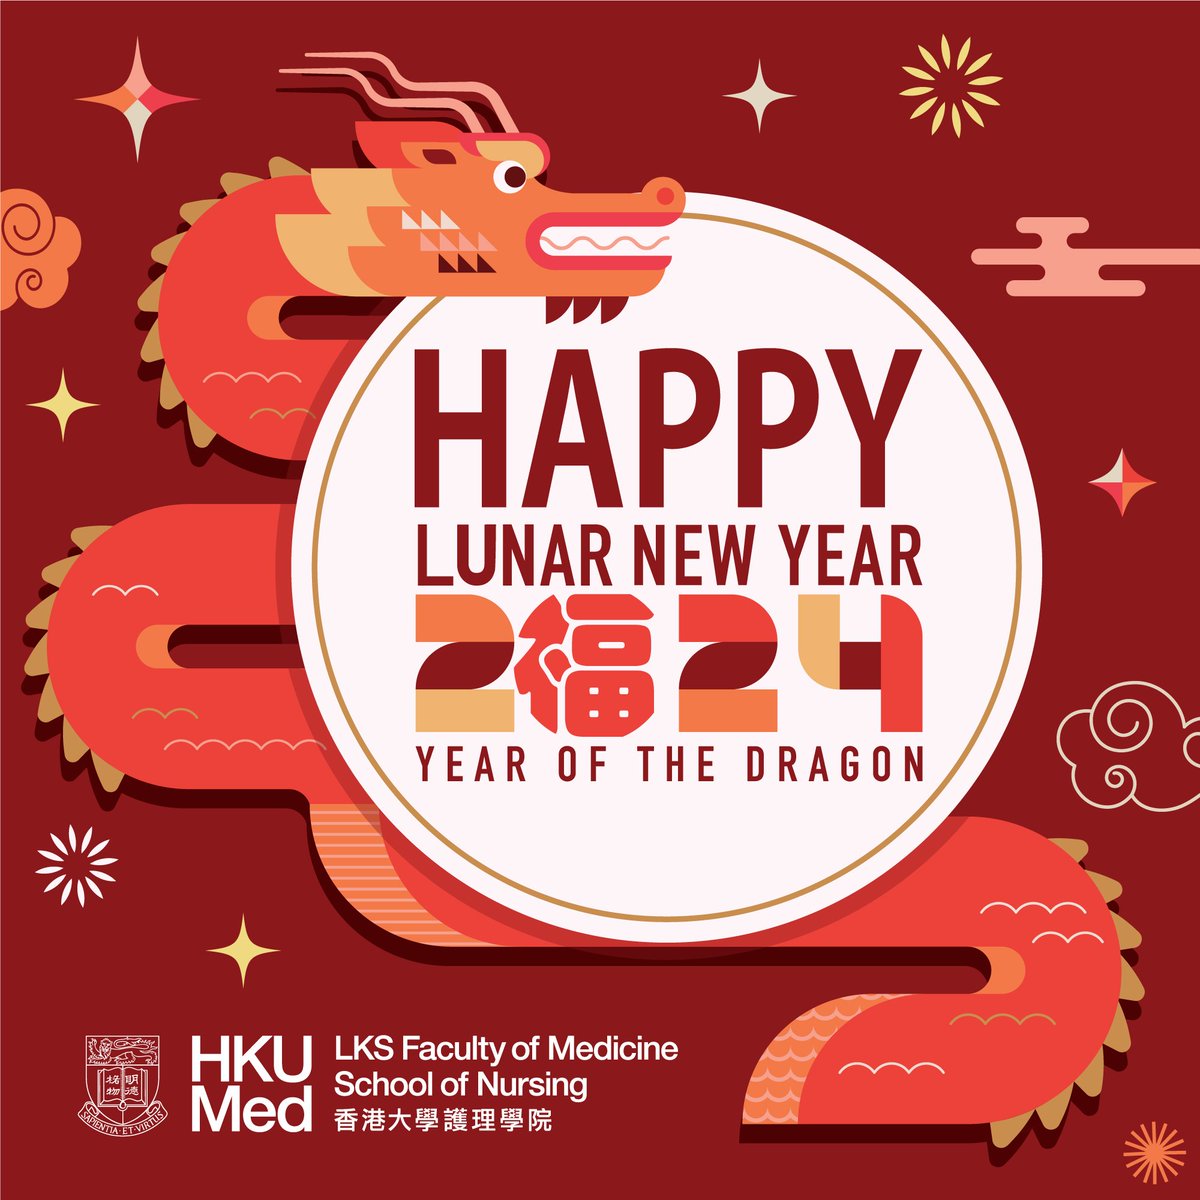 Wishing you a healthy, happy and prosperous Year of the Dragon!

#hkuson #HKUNursing #港大護理
#greetings #LunarNewYear #CNY #ChineseNewYear #LunarNewYear2024